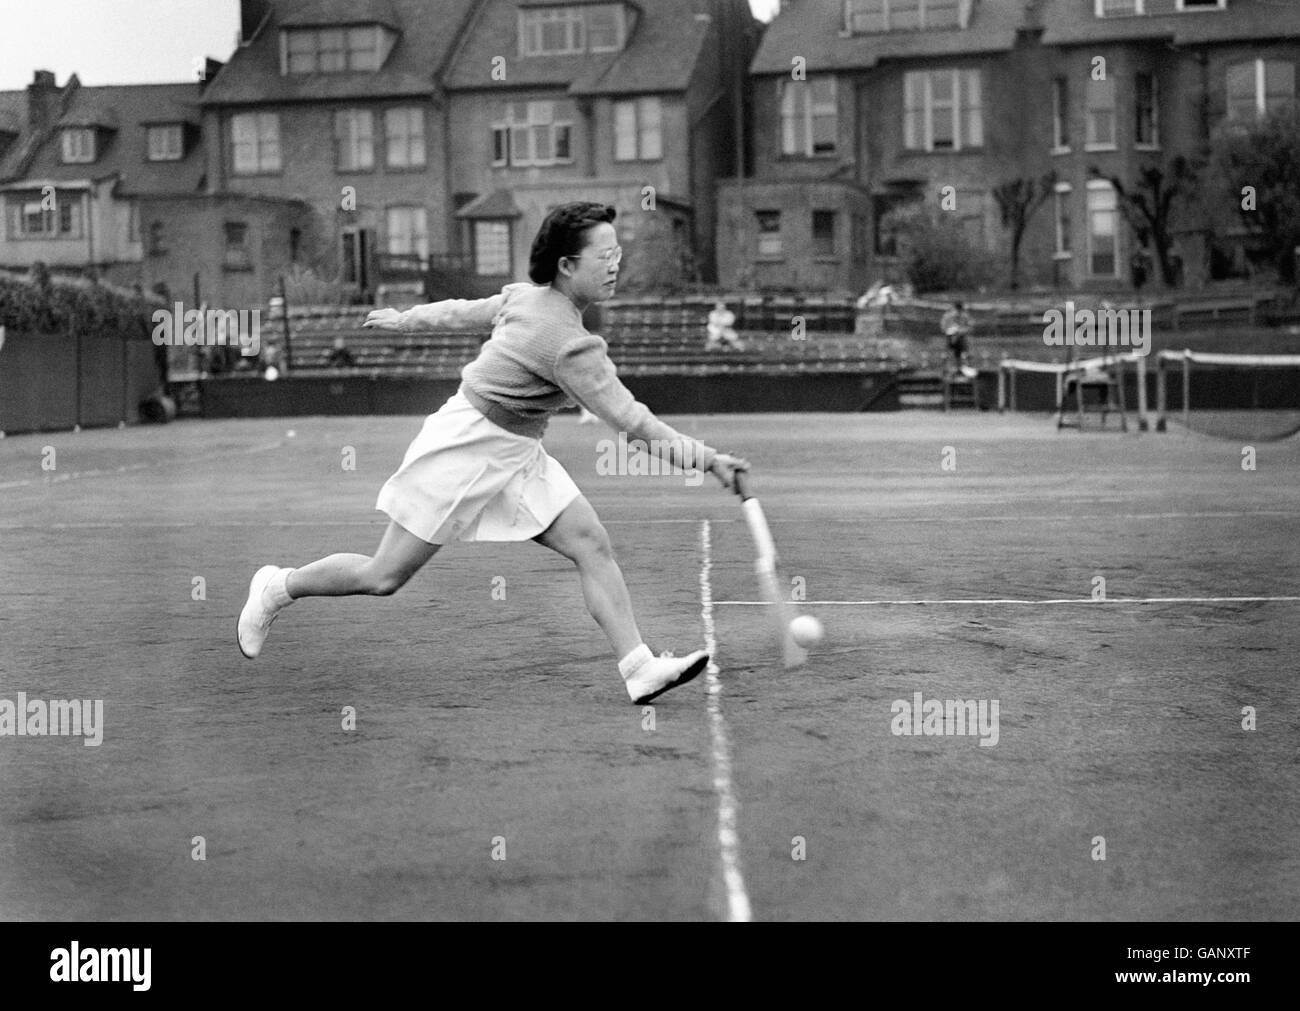 Tenis - Torneo de Tenis Cumberland - Hampstead. Miss Gem Hoahing en juego. Foto de stock